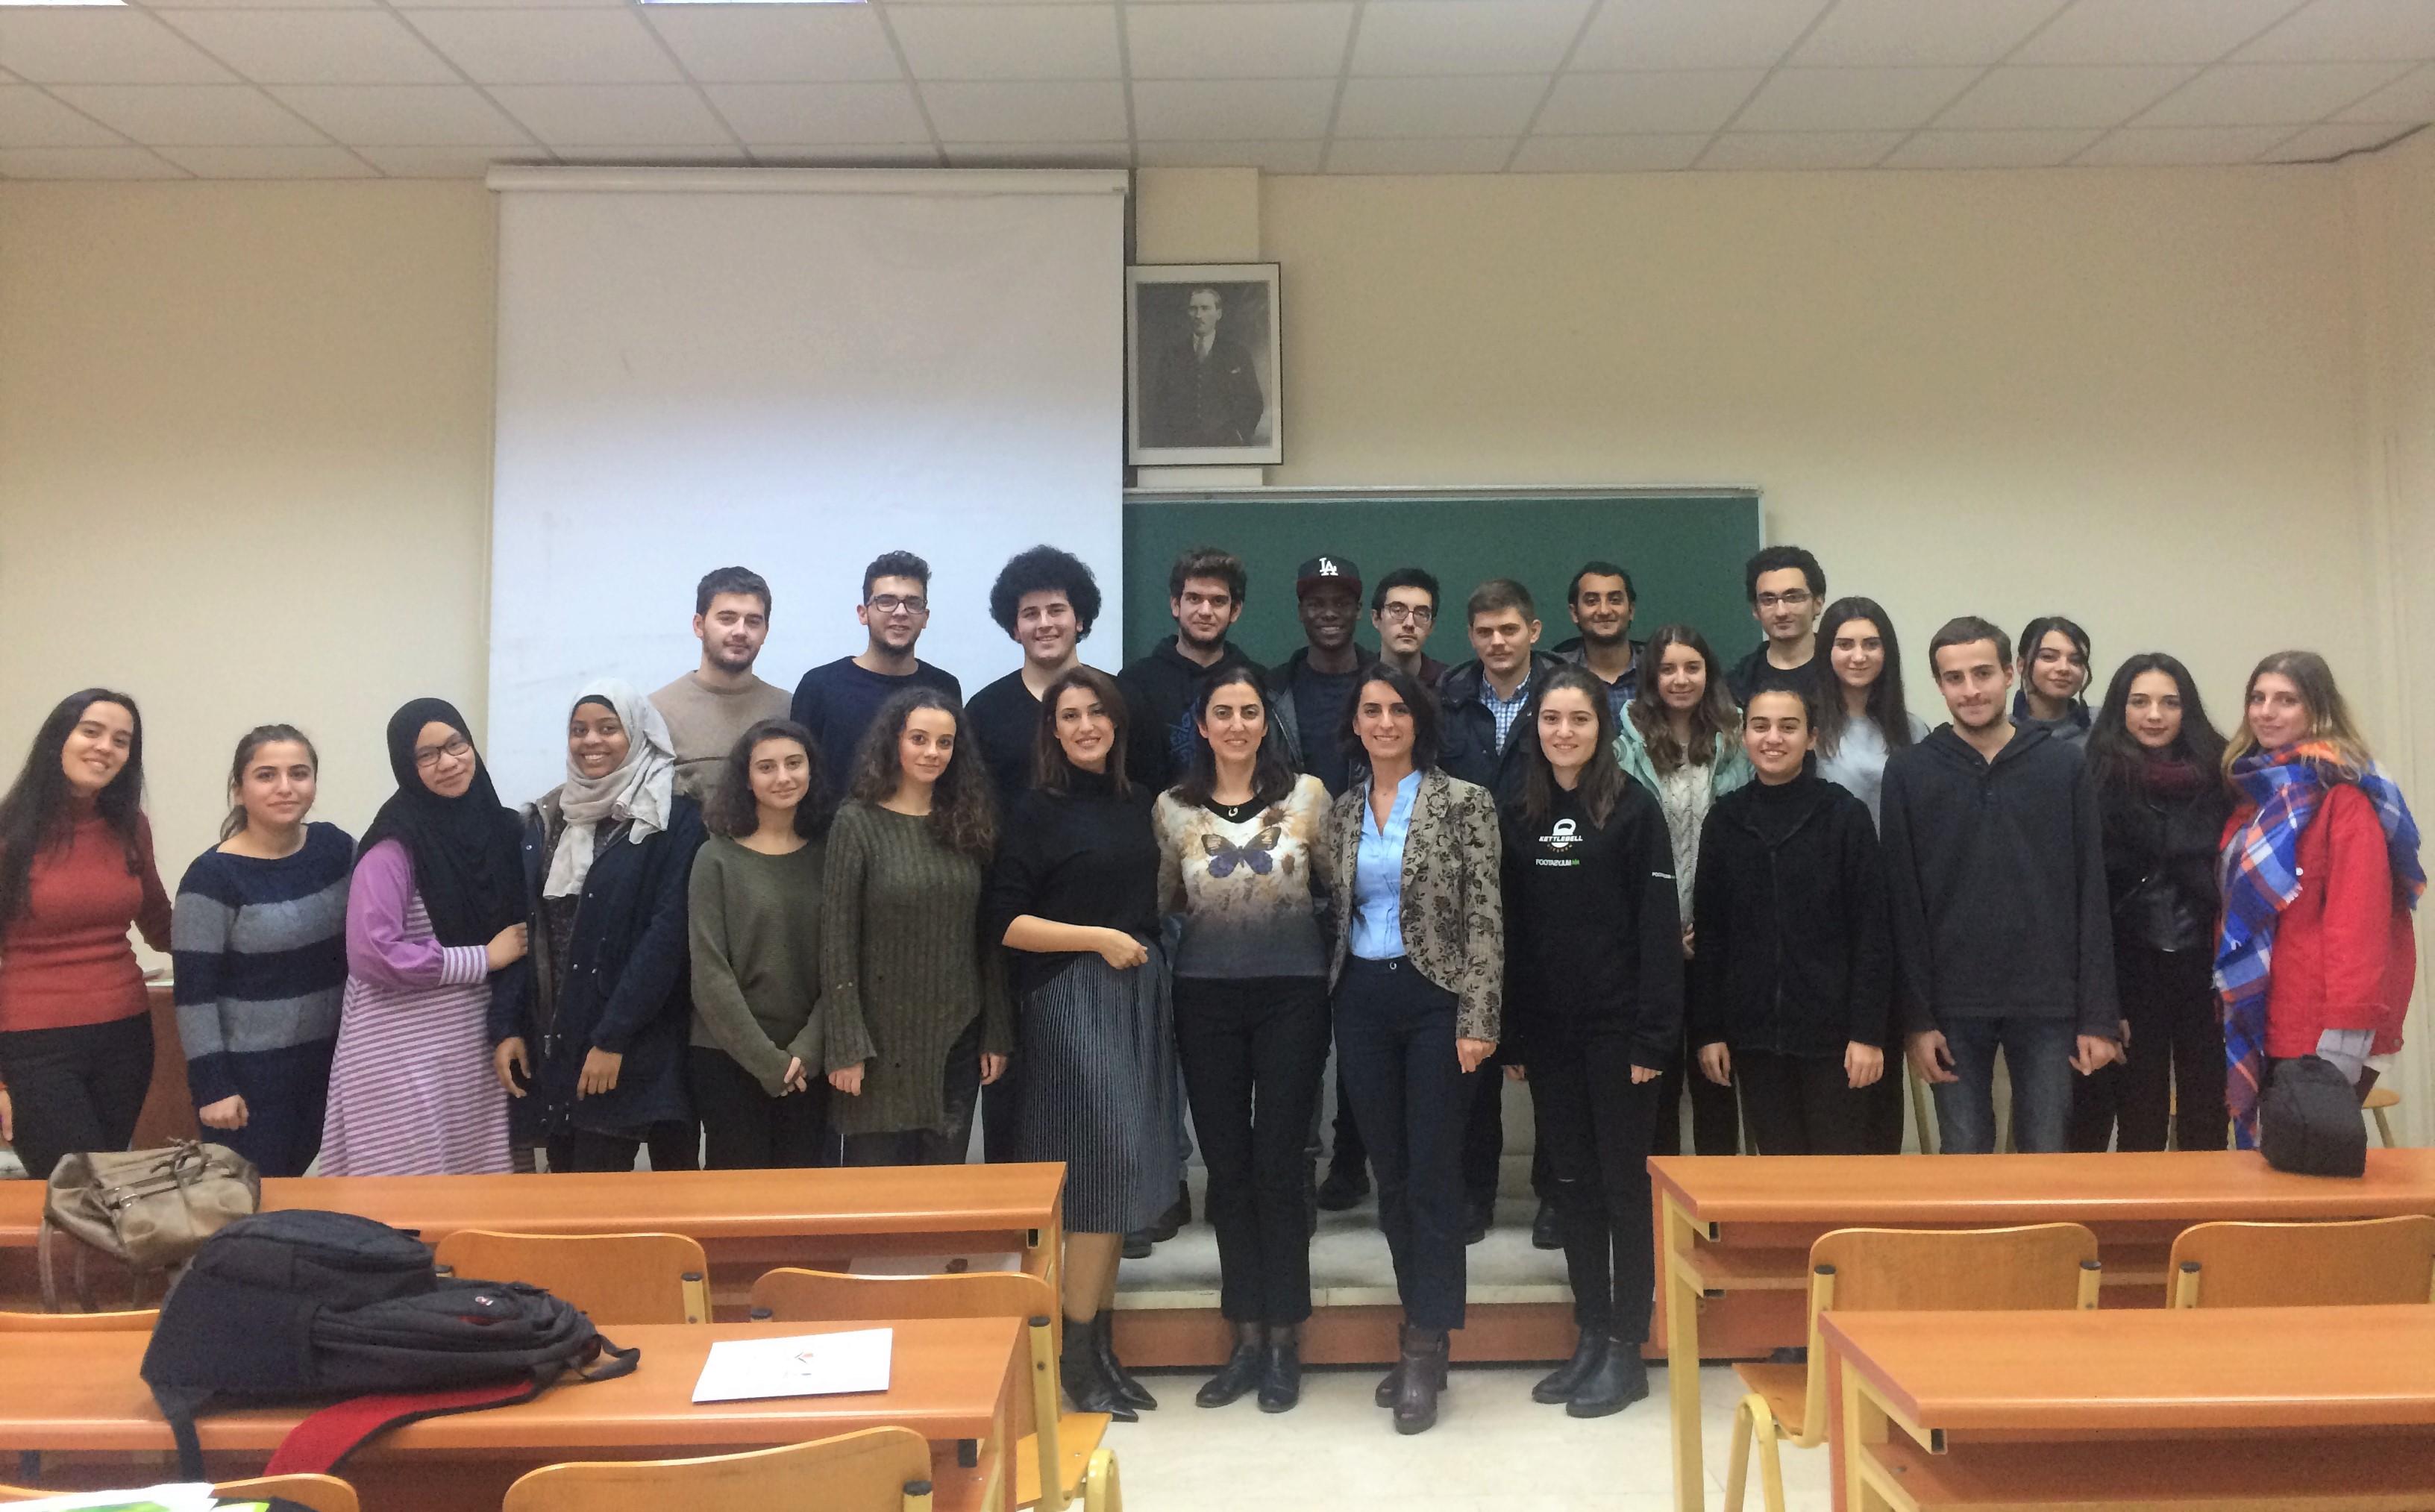 İstanbul Üniversitesi Kimya Mühendisliği Bölümü Öğrencileri İle Bir Araya Geldik